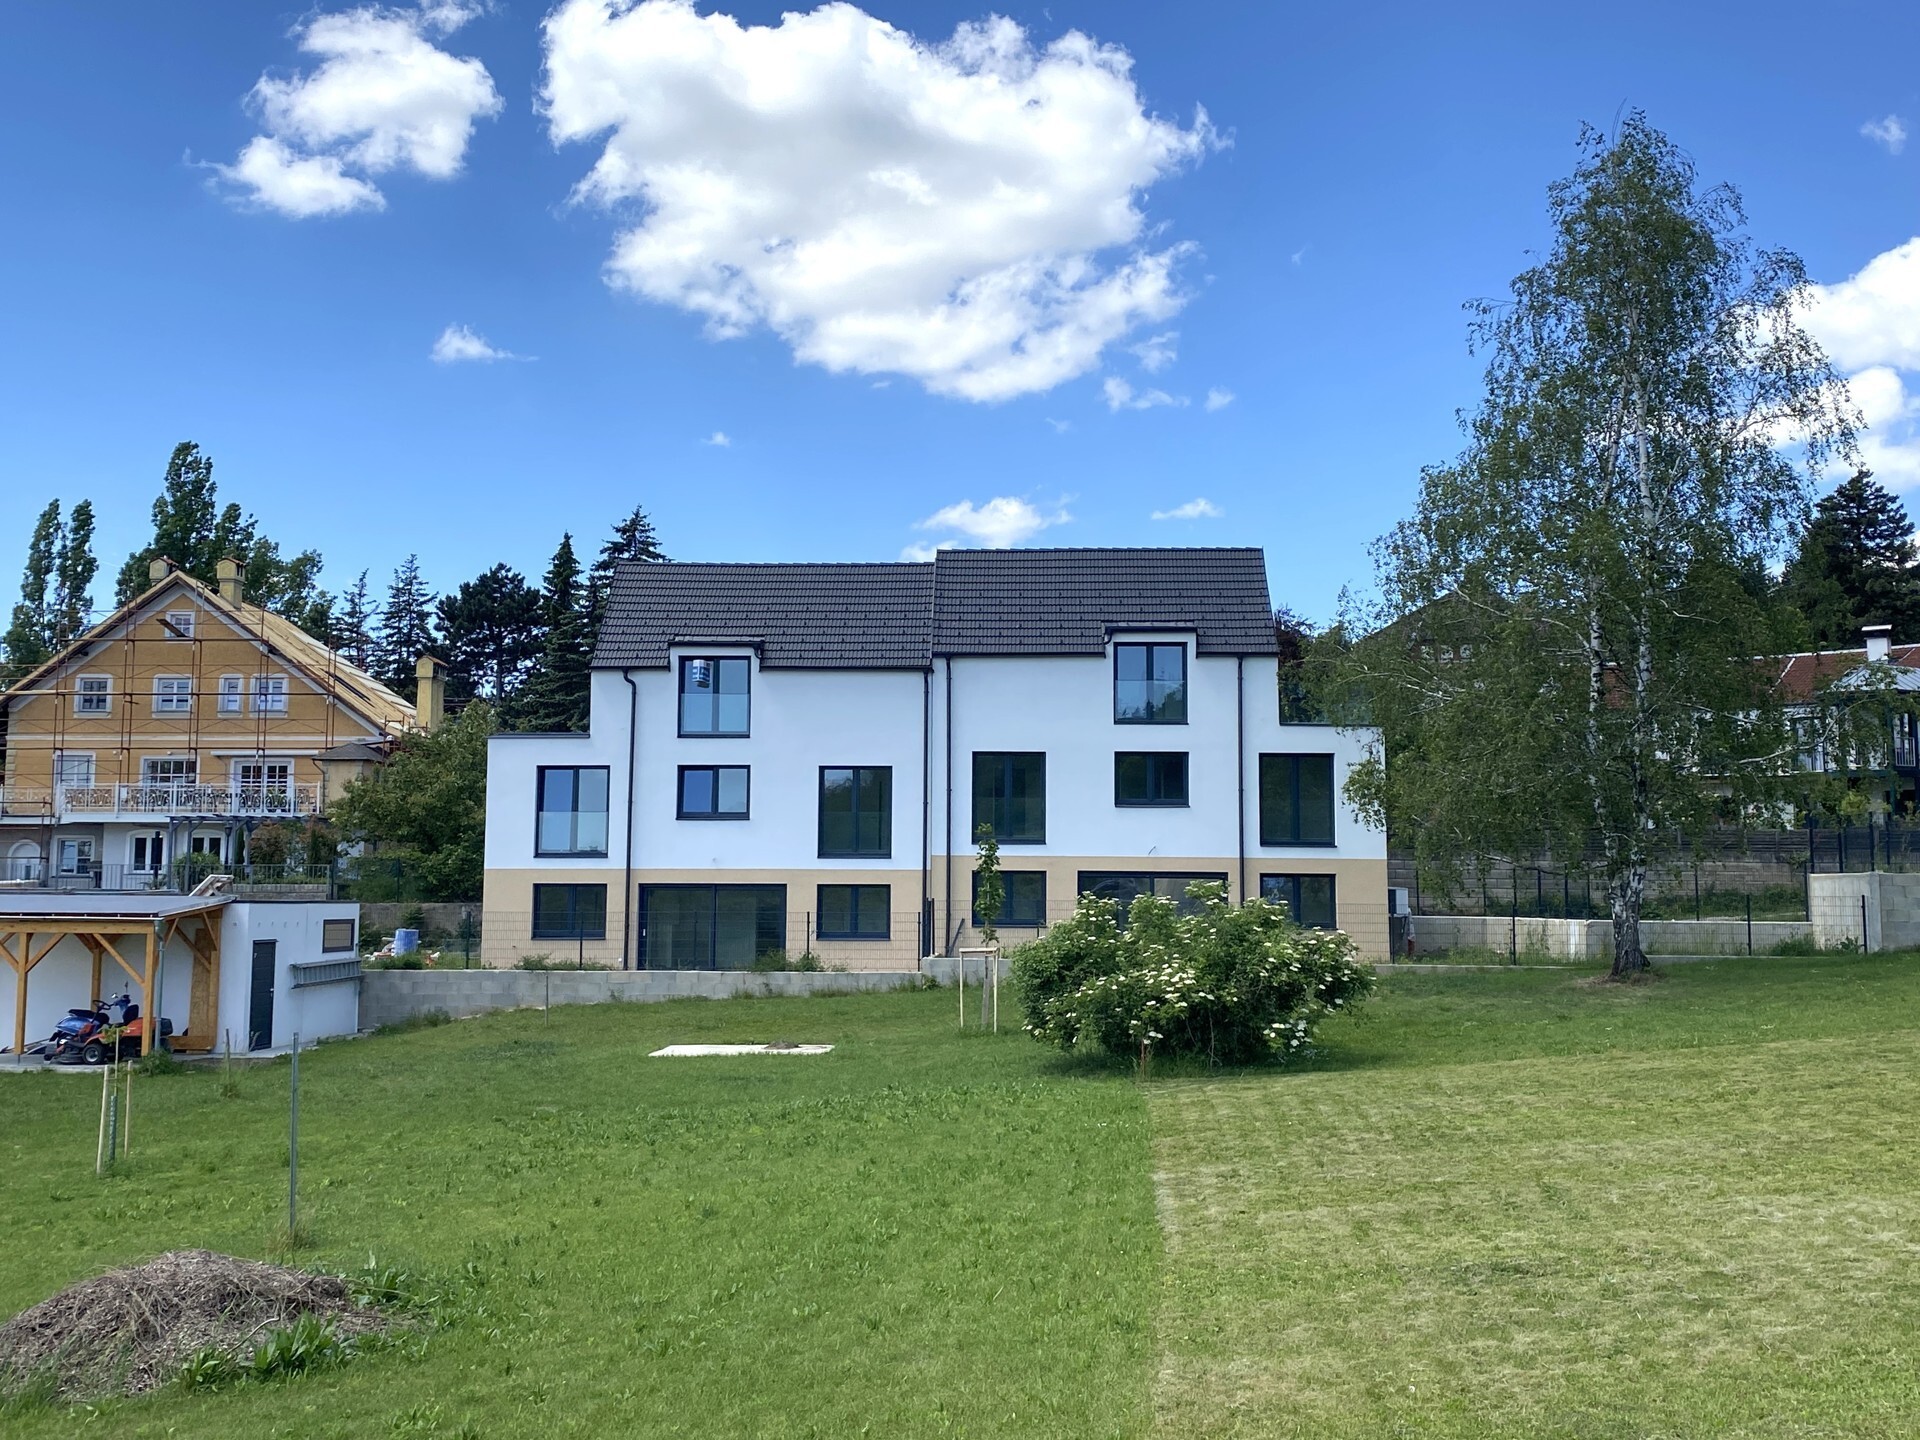 Ziegelmassiv-Doppelhäuser mit effizienter Luftwärmepumpe - zu kaufen in 2102 Hagenbrunn